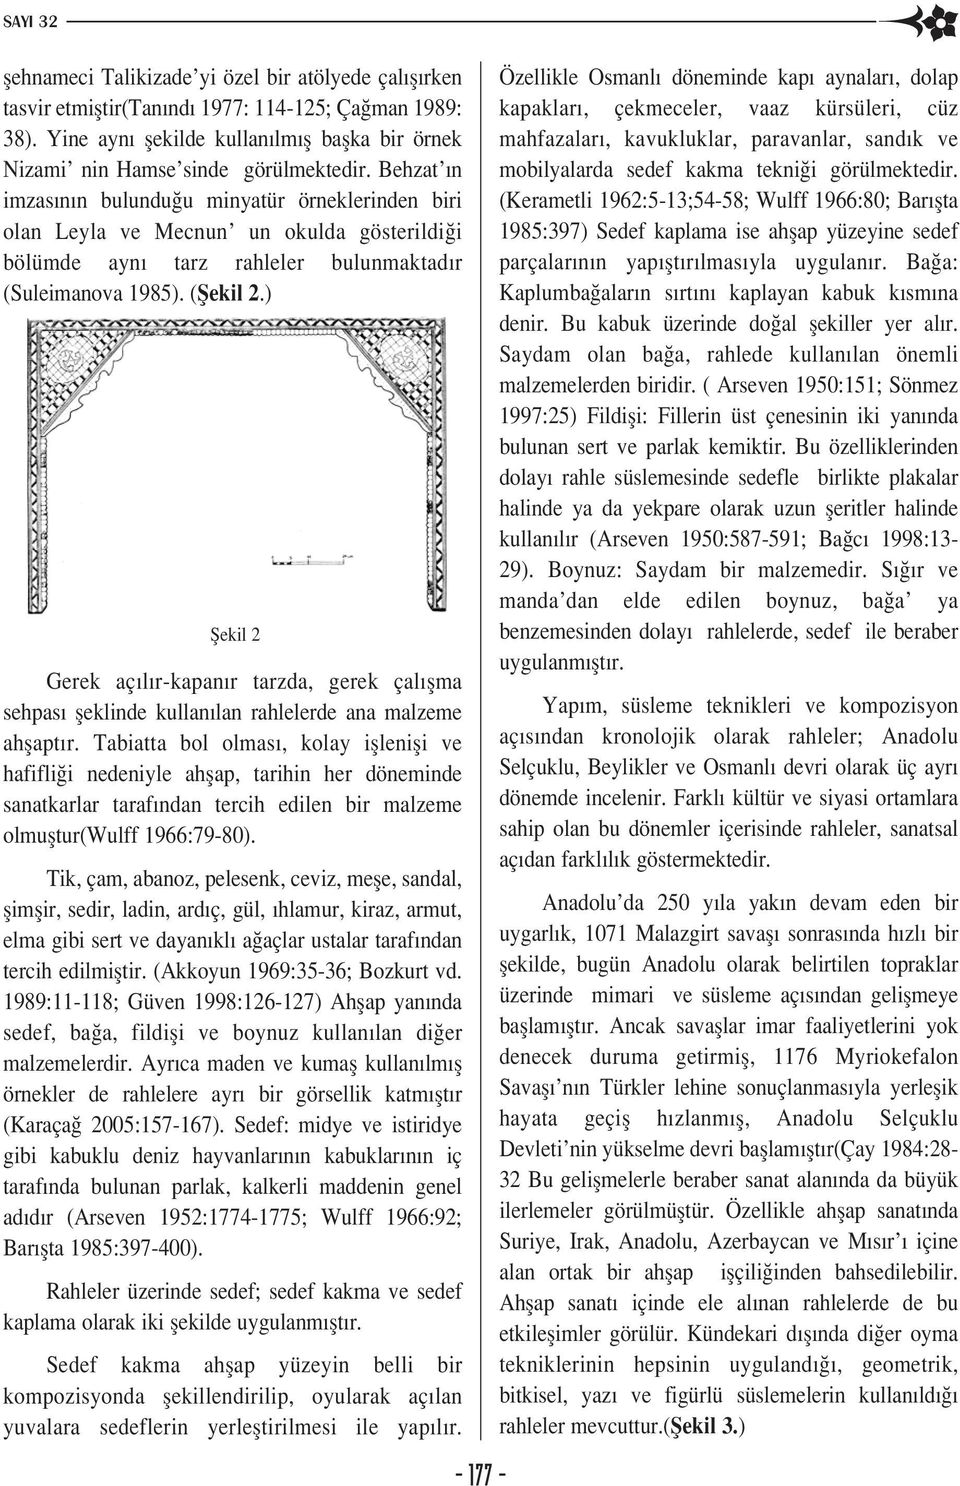 Behzat n imzas n n bulundu u minyatür örneklerinden biri olan Leyla ve Mecnun un okulda gösterildi i bölümde ayn tarz rahleler bulunmaktad r (Suleimanova 1985). (fiekil 2.